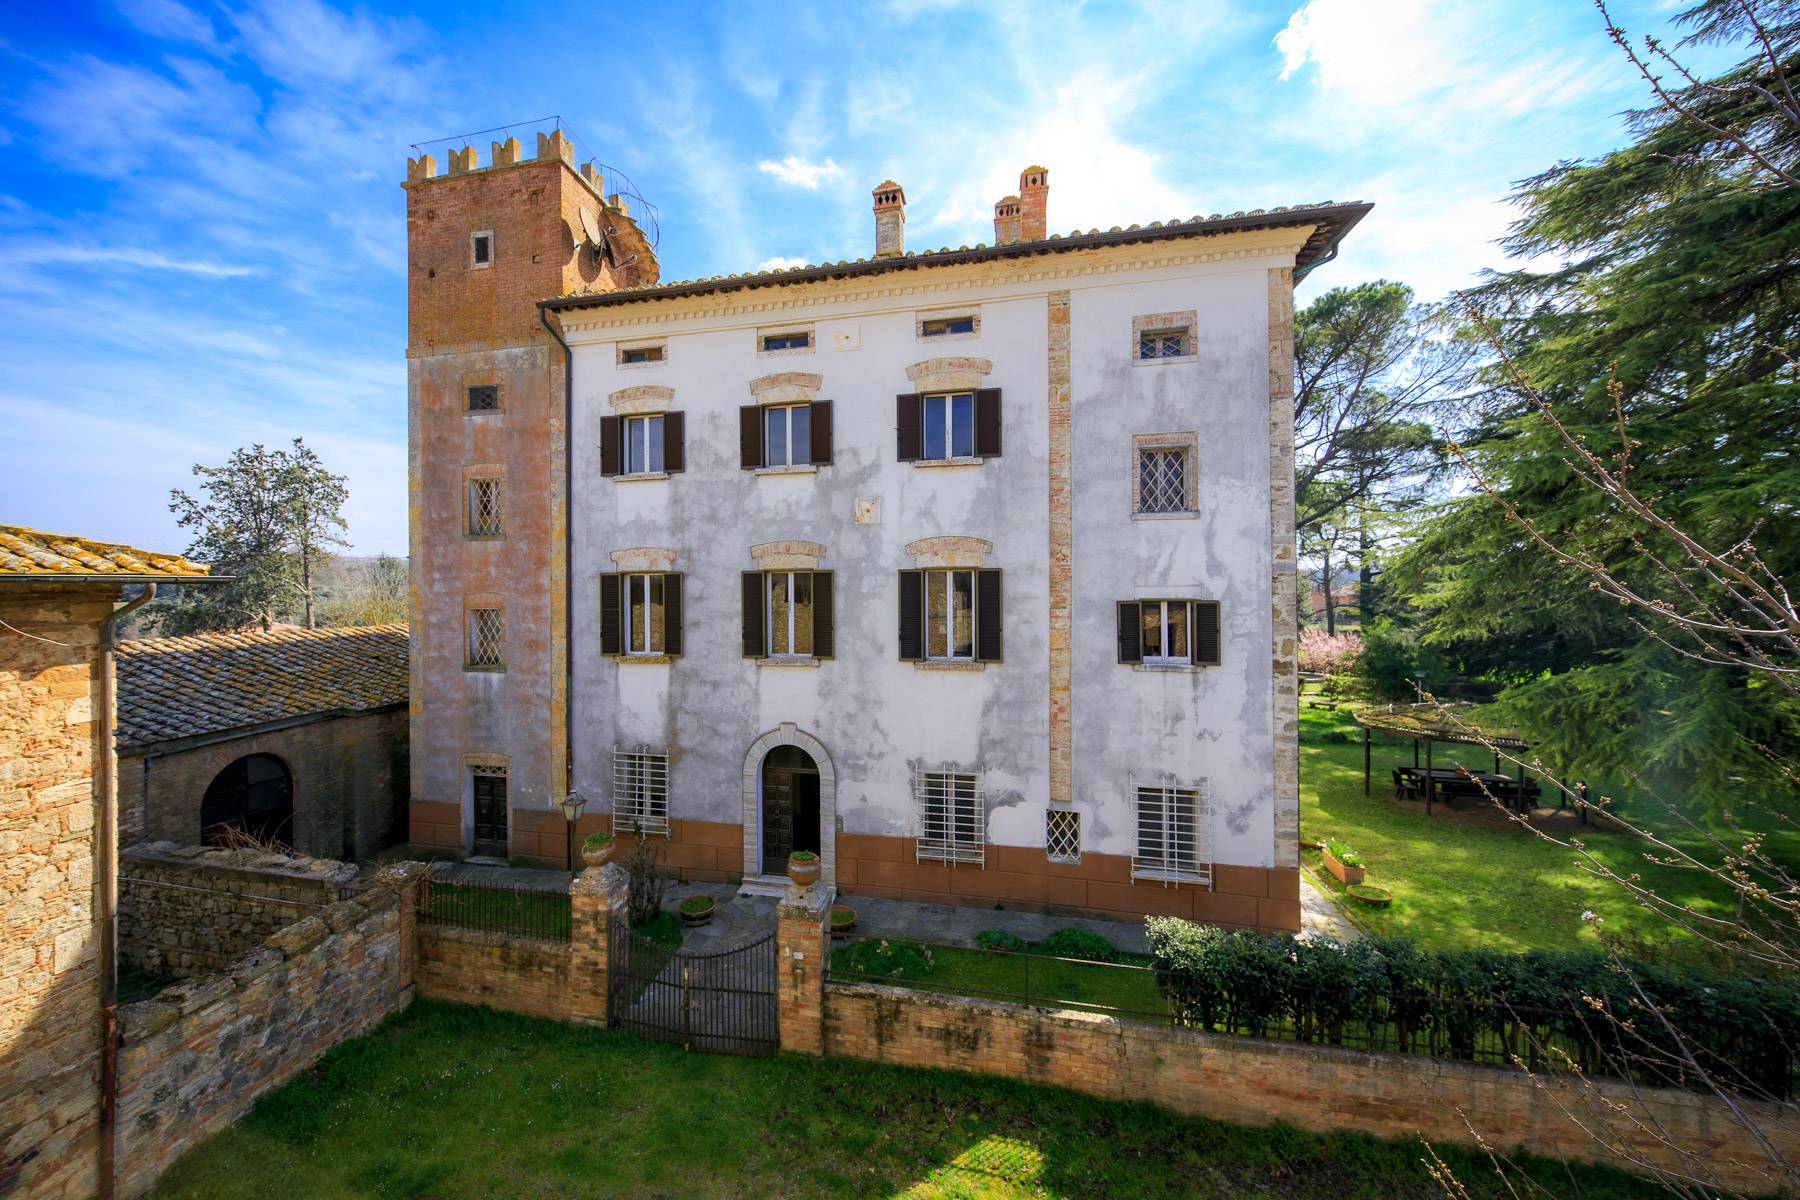 Villa in Vendita a Montepulciano: 5 locali, 2400 mq - Foto 2